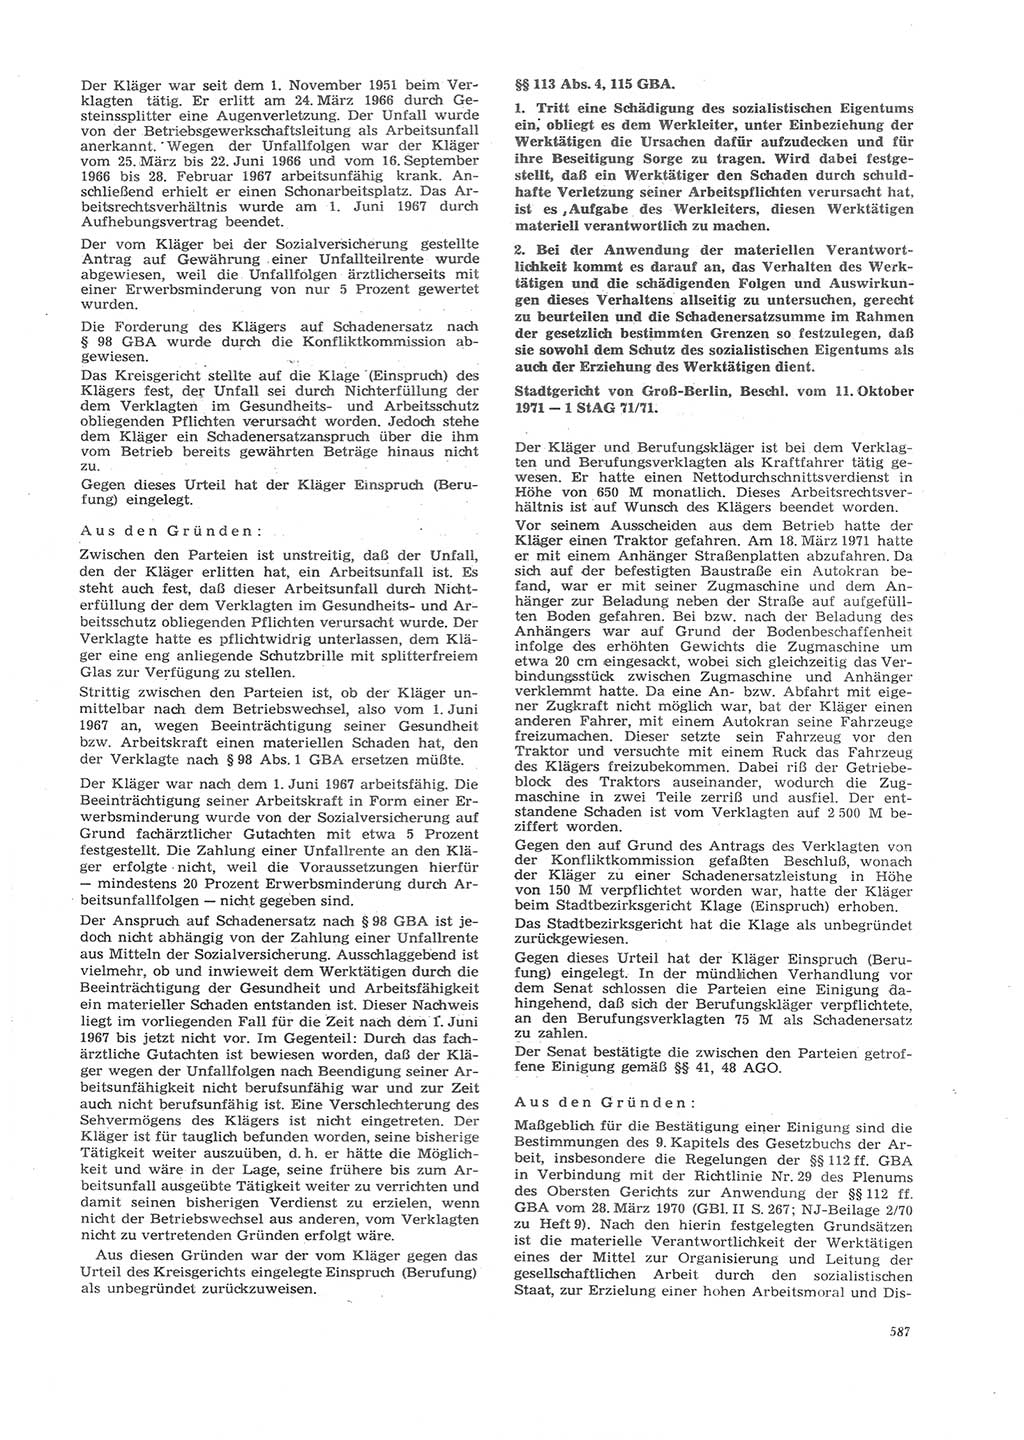 Neue Justiz (NJ), Zeitschrift für Recht und Rechtswissenschaft [Deutsche Demokratische Republik (DDR)], 26. Jahrgang 1972, Seite 587 (NJ DDR 1972, S. 587)